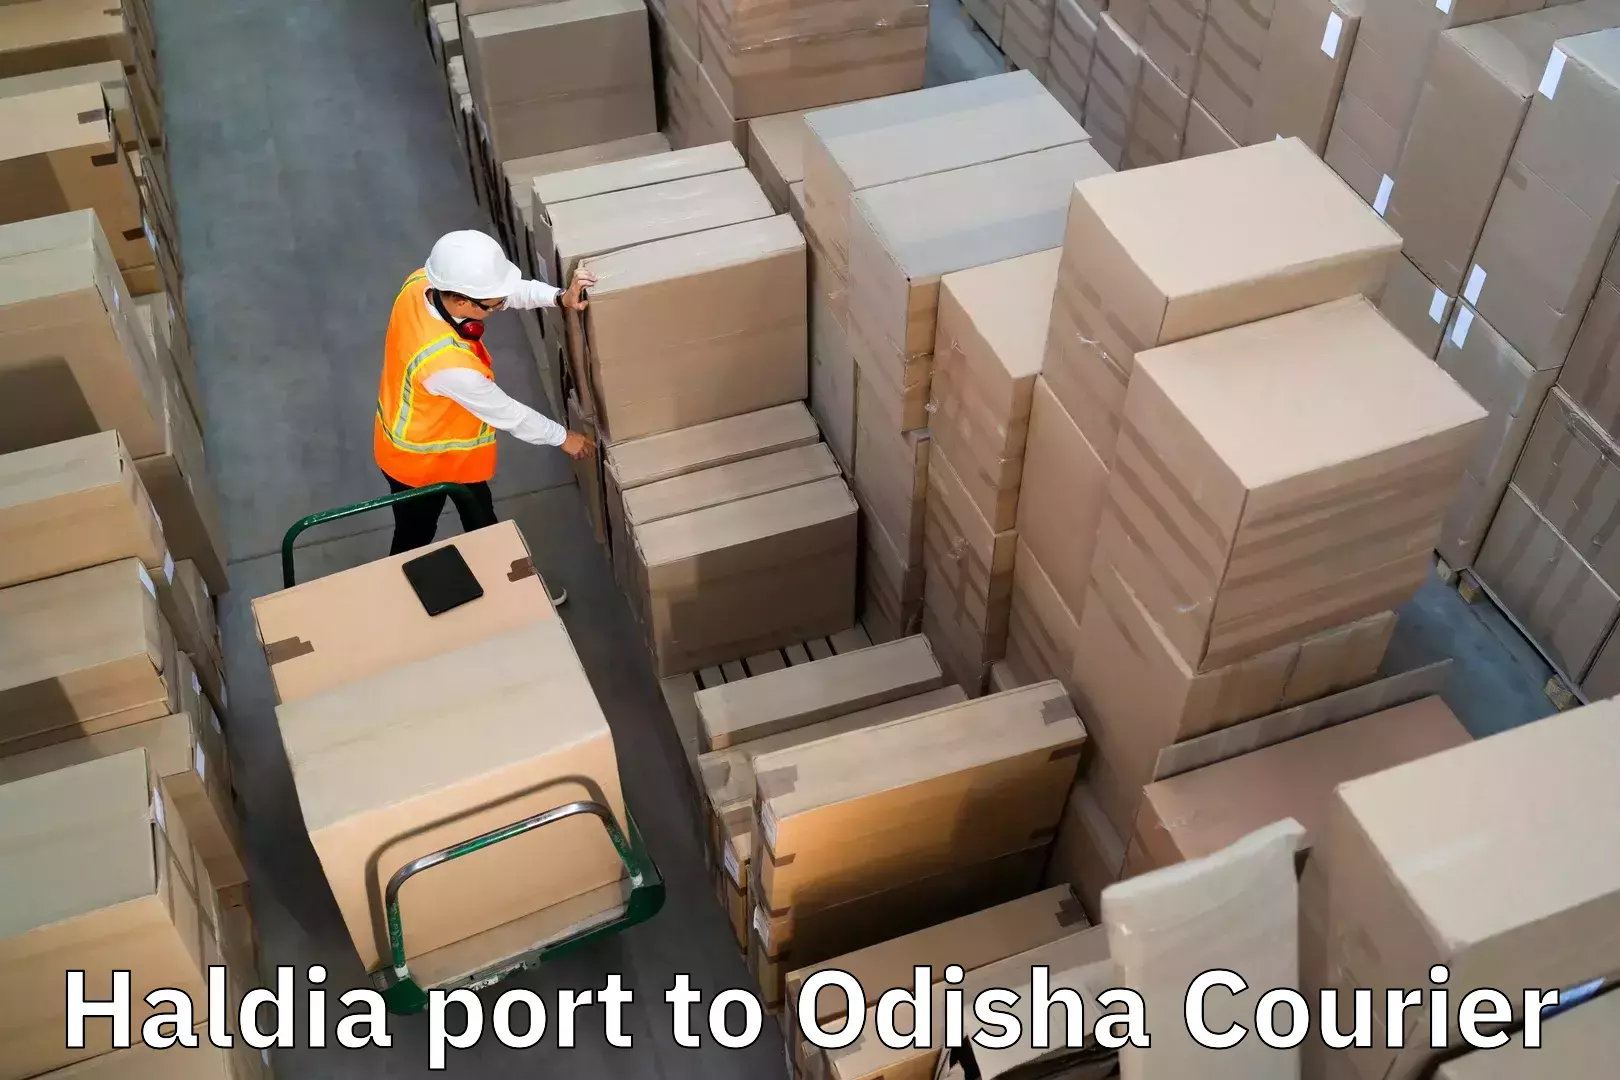 Luggage transport consulting Haldia port to Kupari